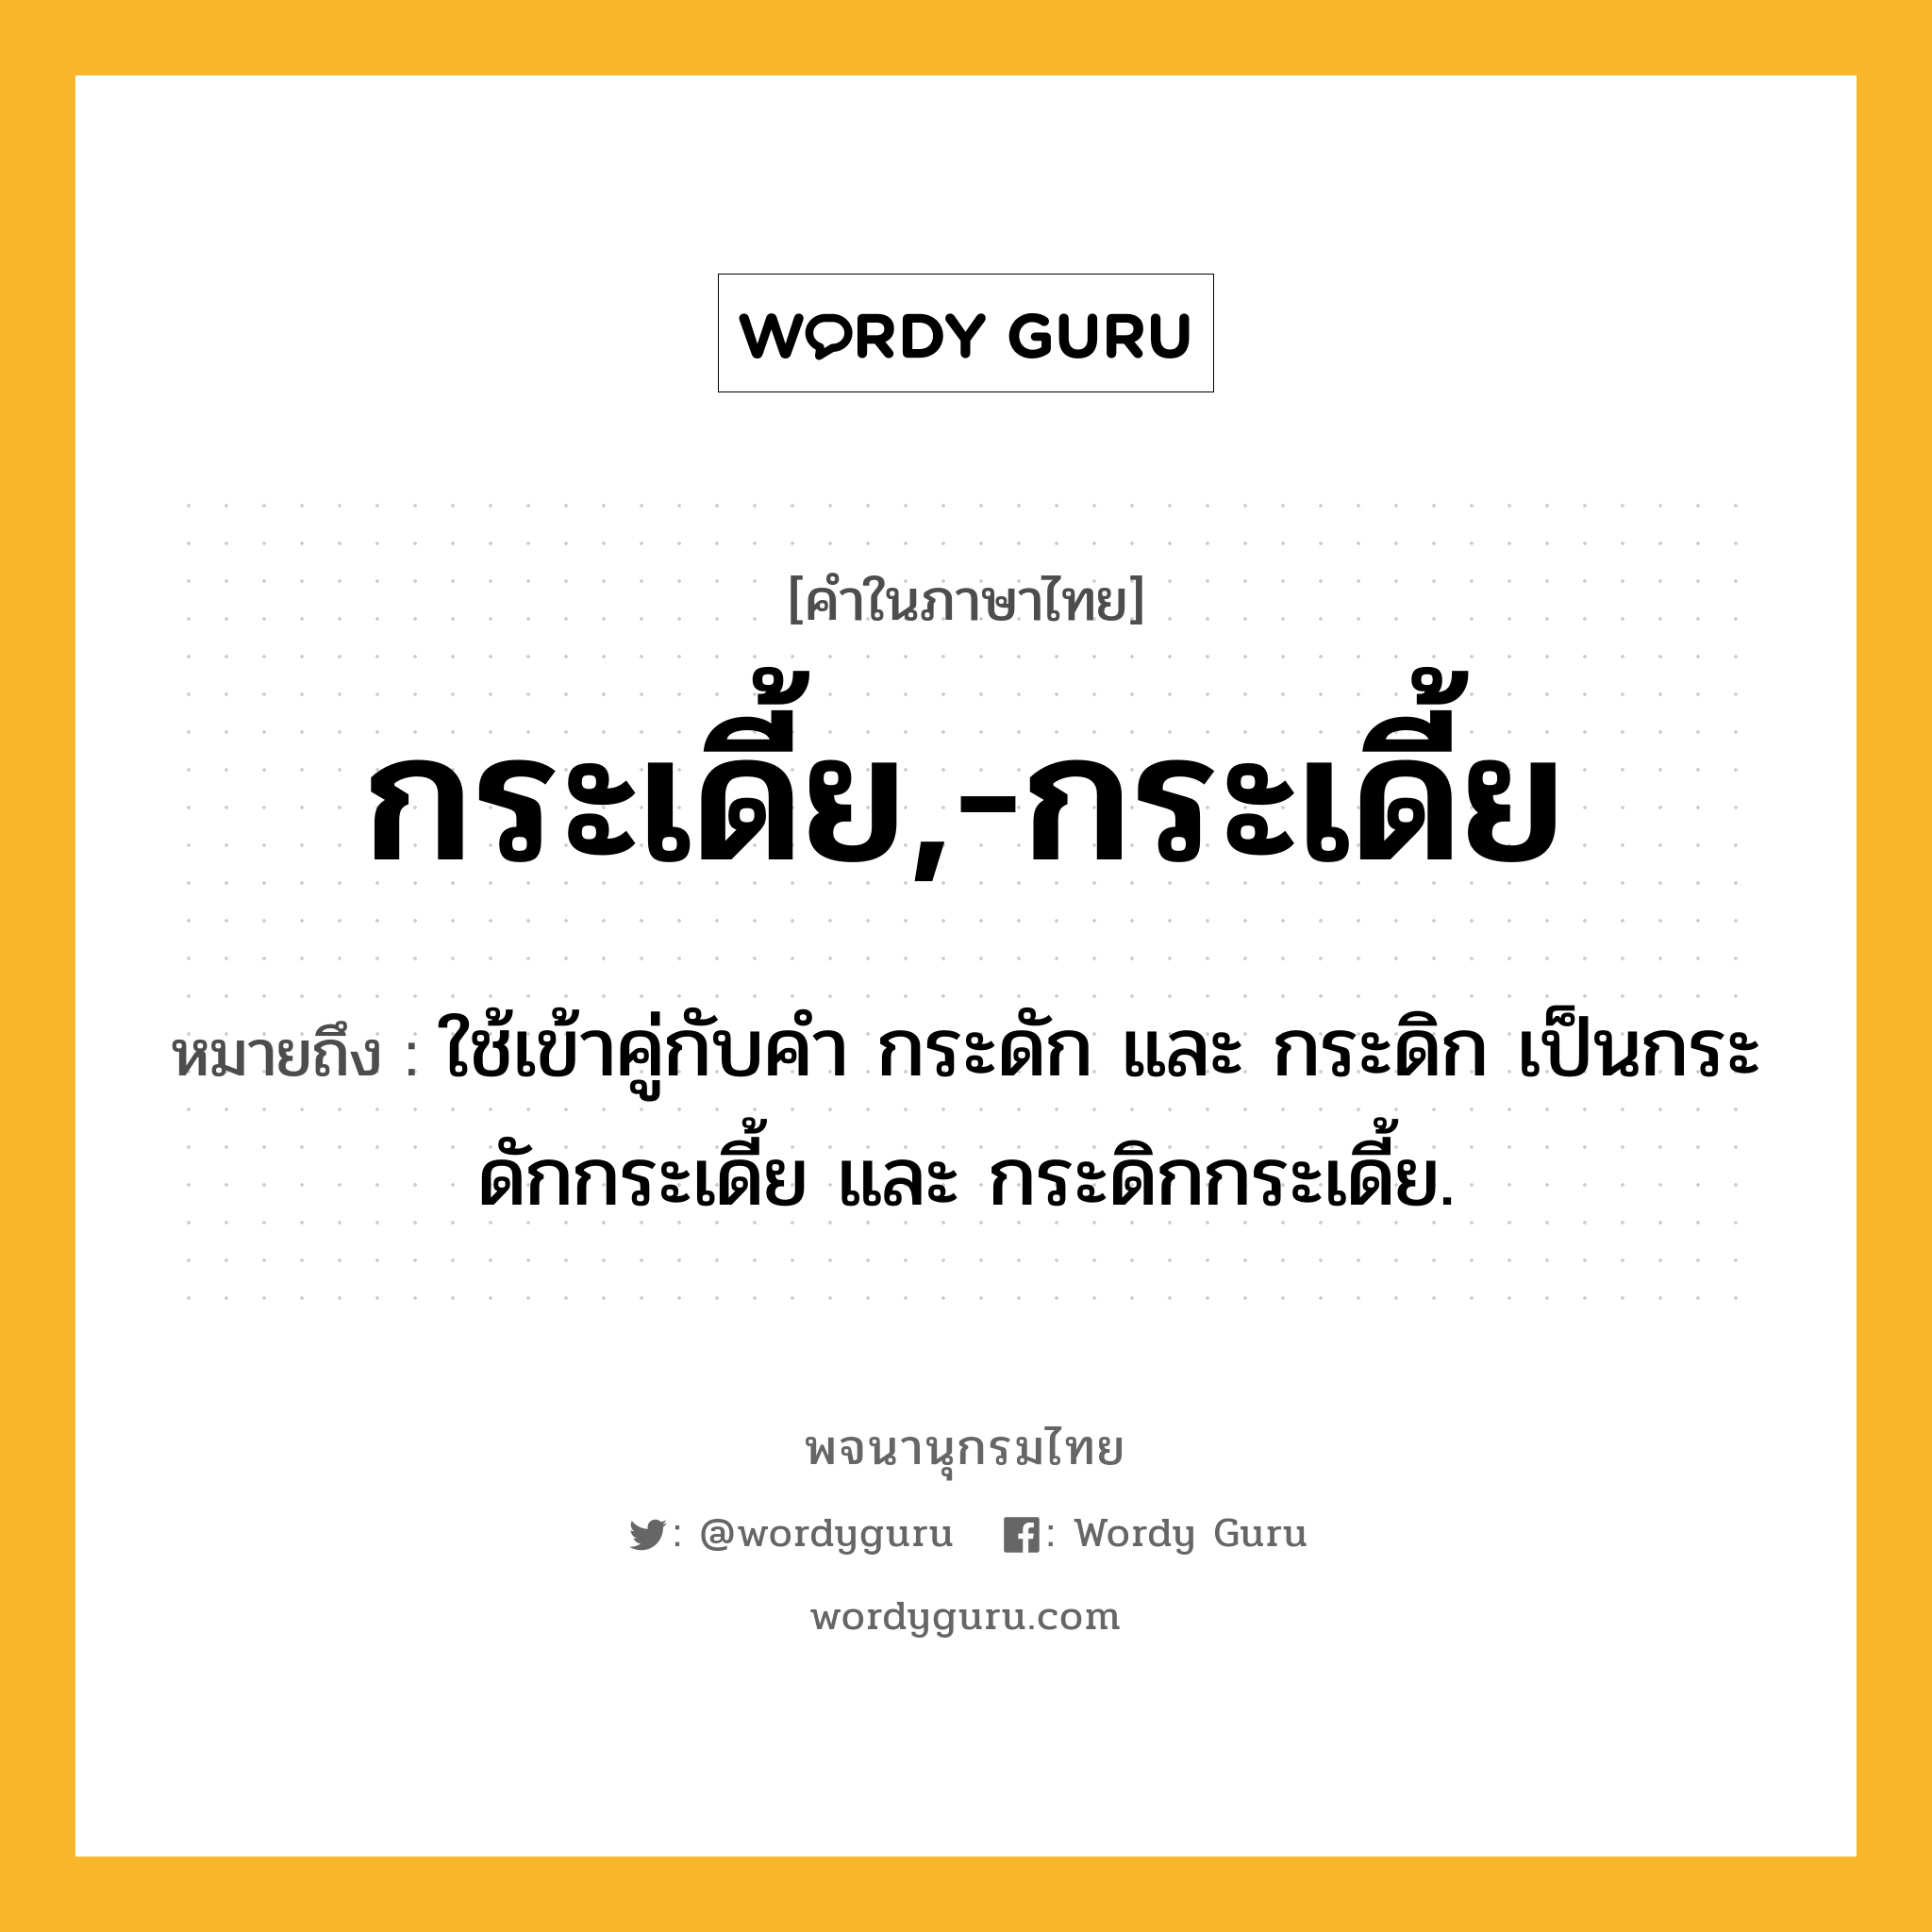 กระเดี้ย,-กระเดี้ย หมายถึงอะไร?, คำในภาษาไทย กระเดี้ย,-กระเดี้ย หมายถึง ใช้เข้าคู่กับคํา กระดัก และ กระดิก เป็นกระดักกระเดี้ย และ กระดิกกระเดี้ย.